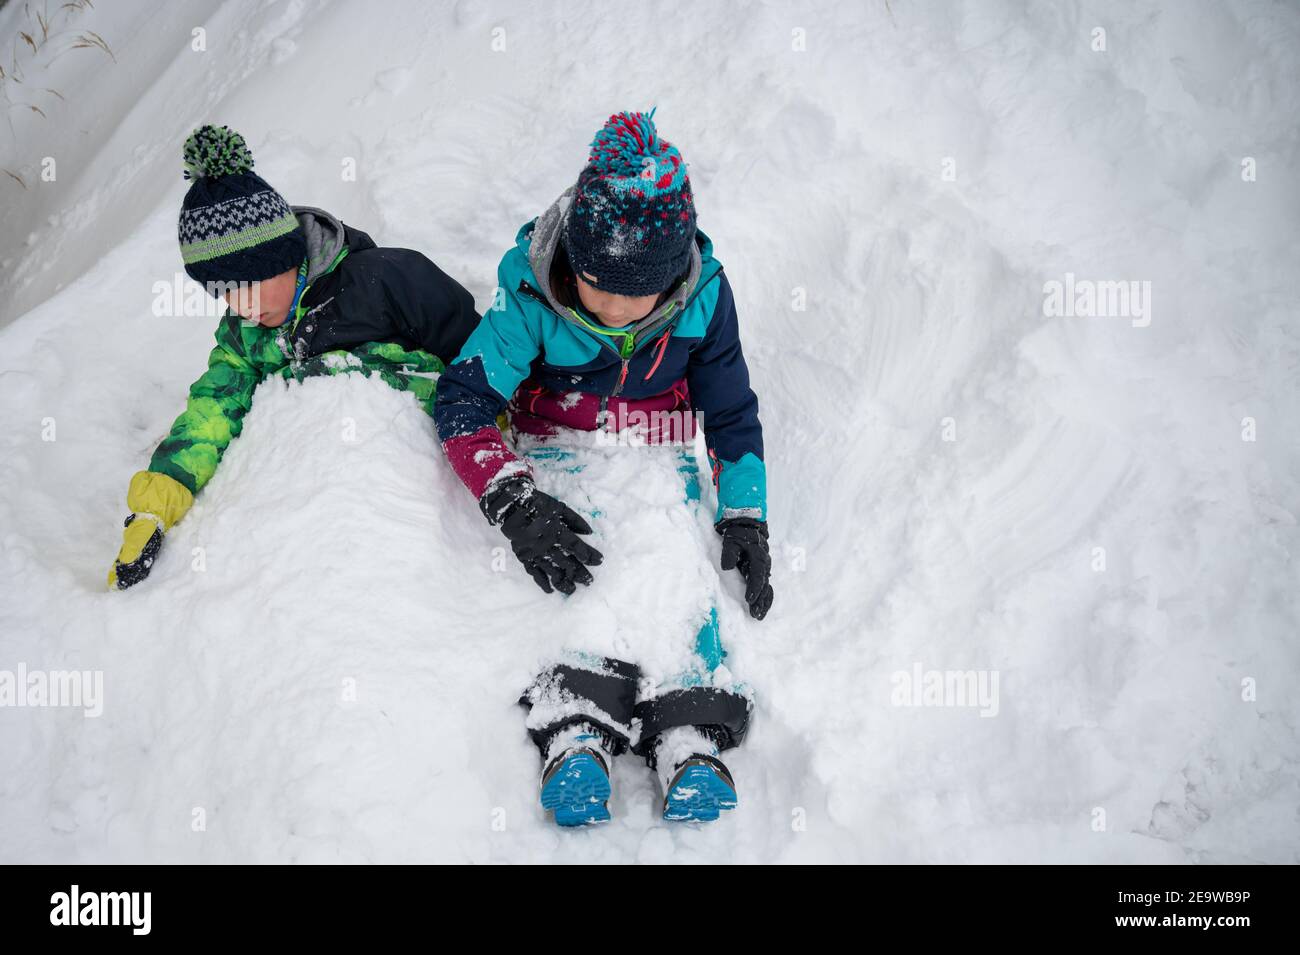 Bambini che giocano nella neve. Due bambini asiatici sepolti nella neve in inverno. Felice infanzia e divertimento. Zermatt, Svizzera. Foto Stock